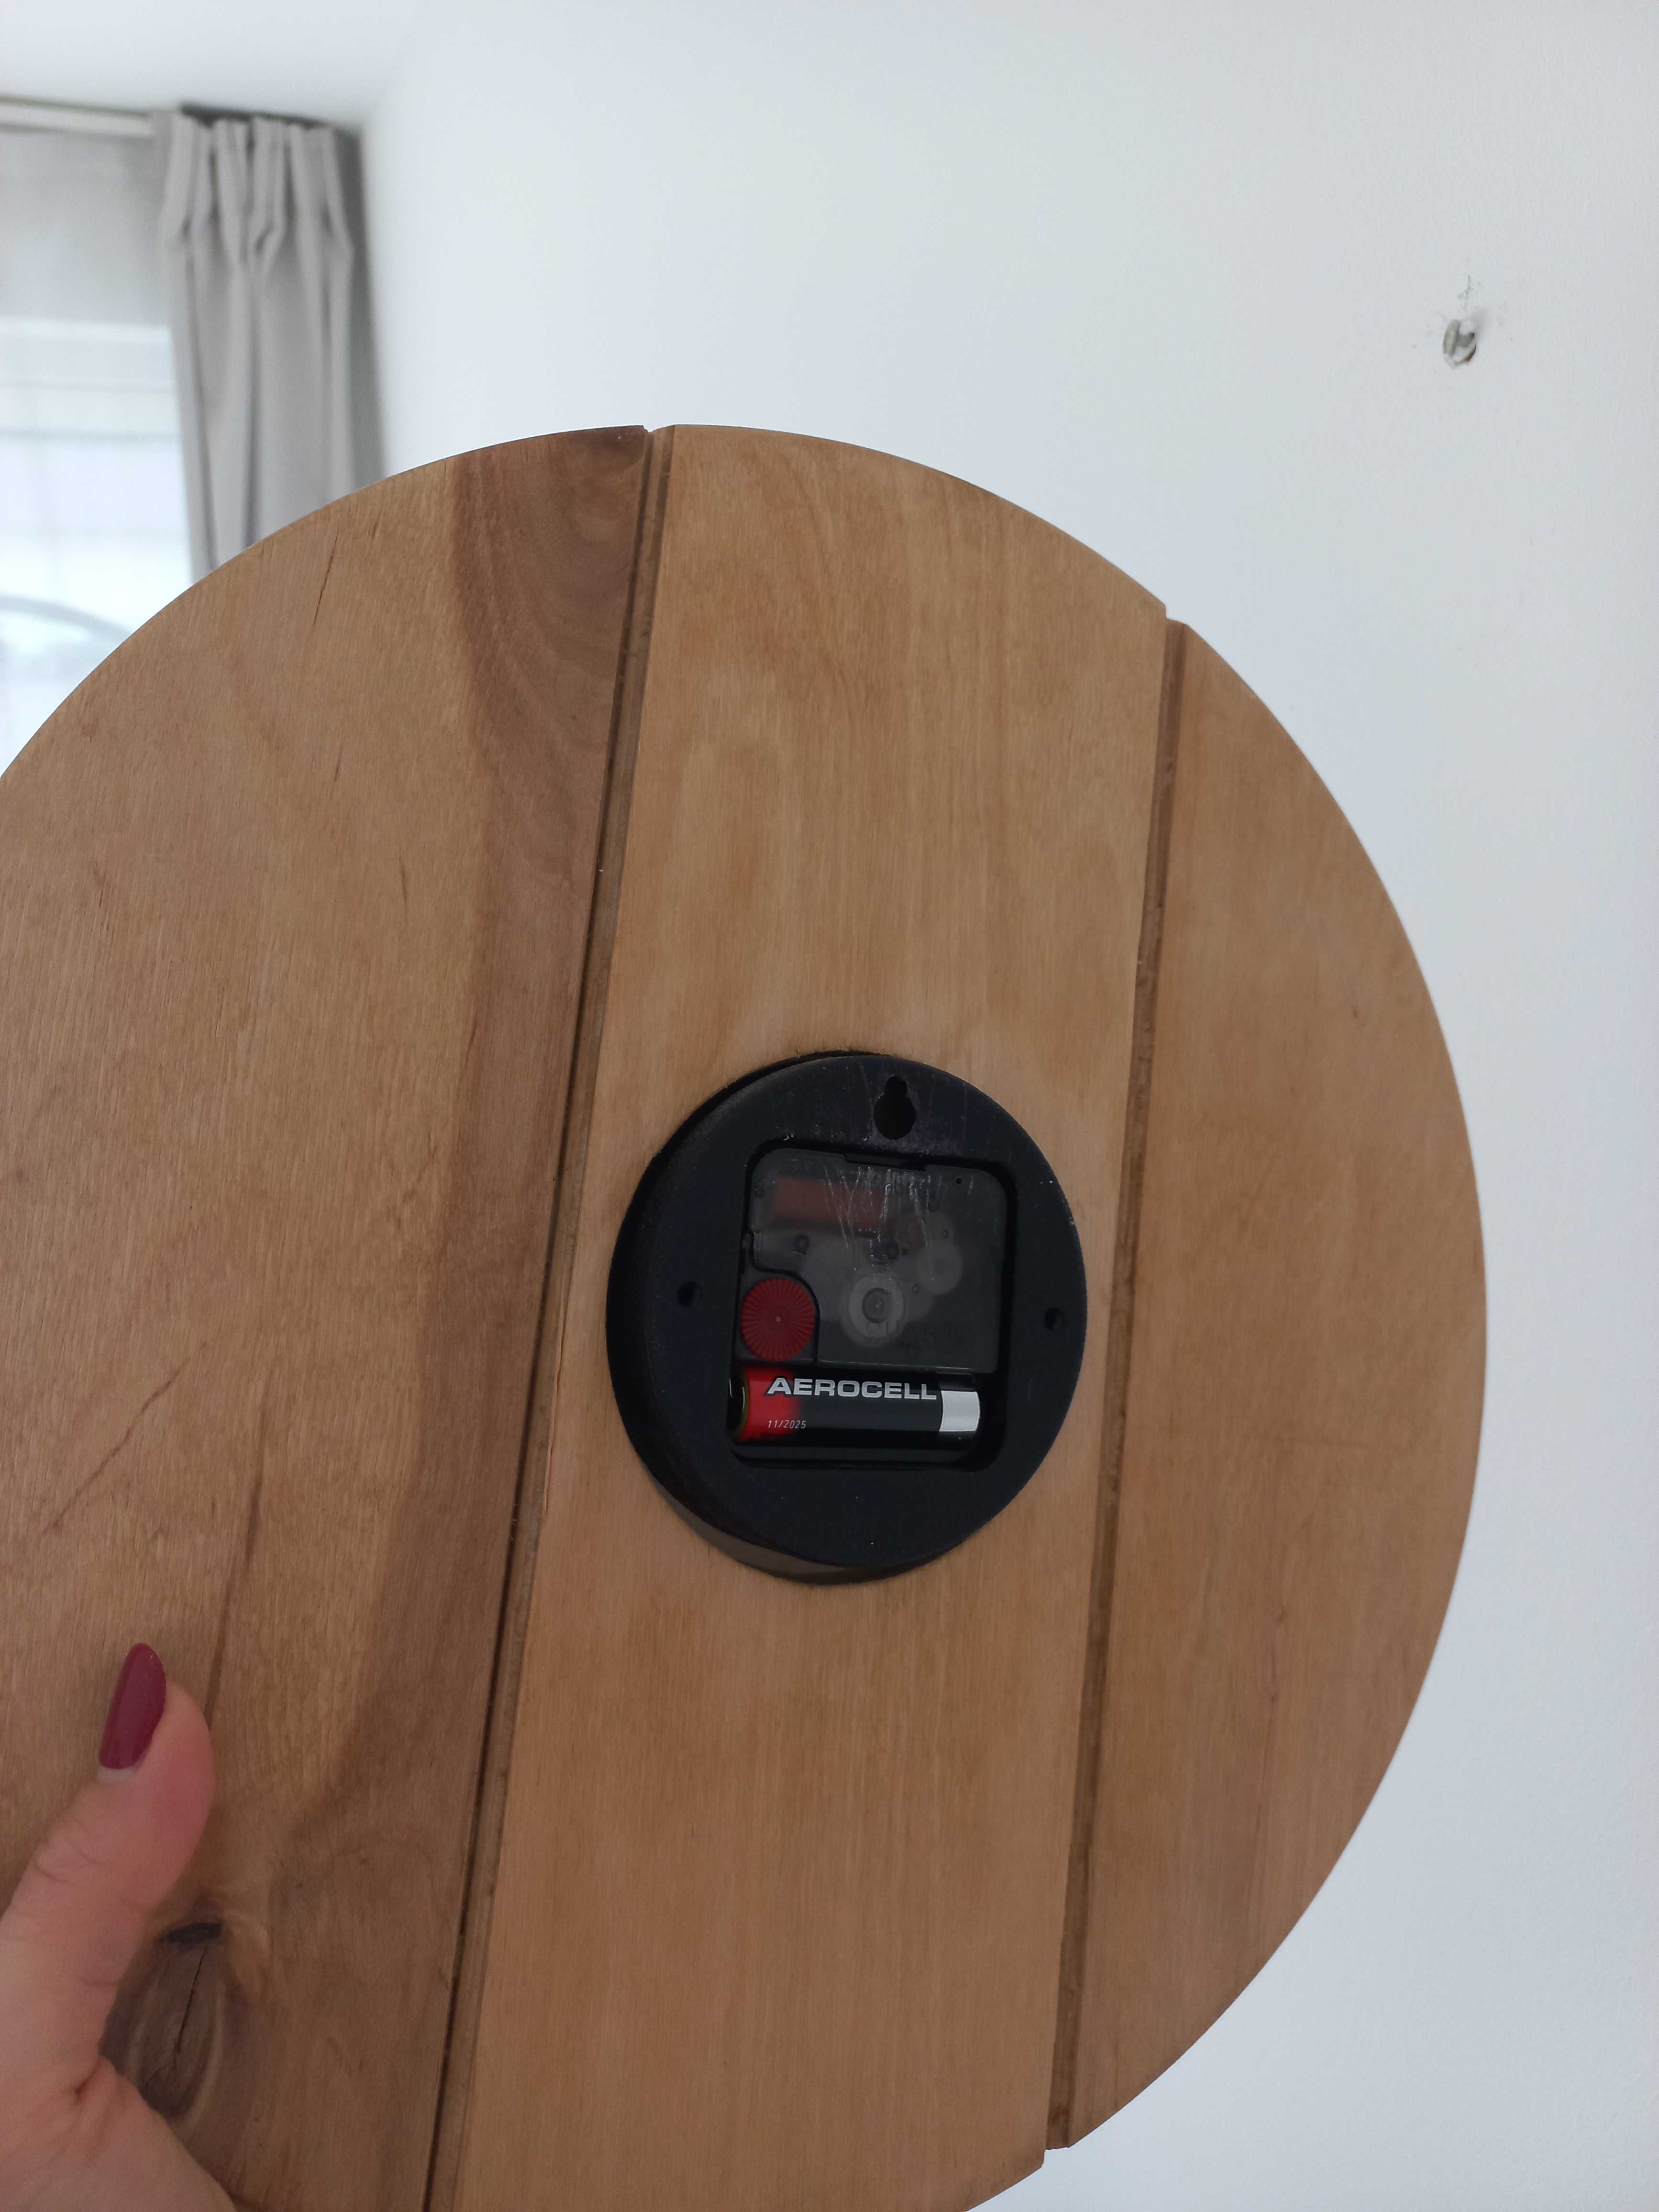 Zegar ścienny drewniany dębowy biały 35 cm